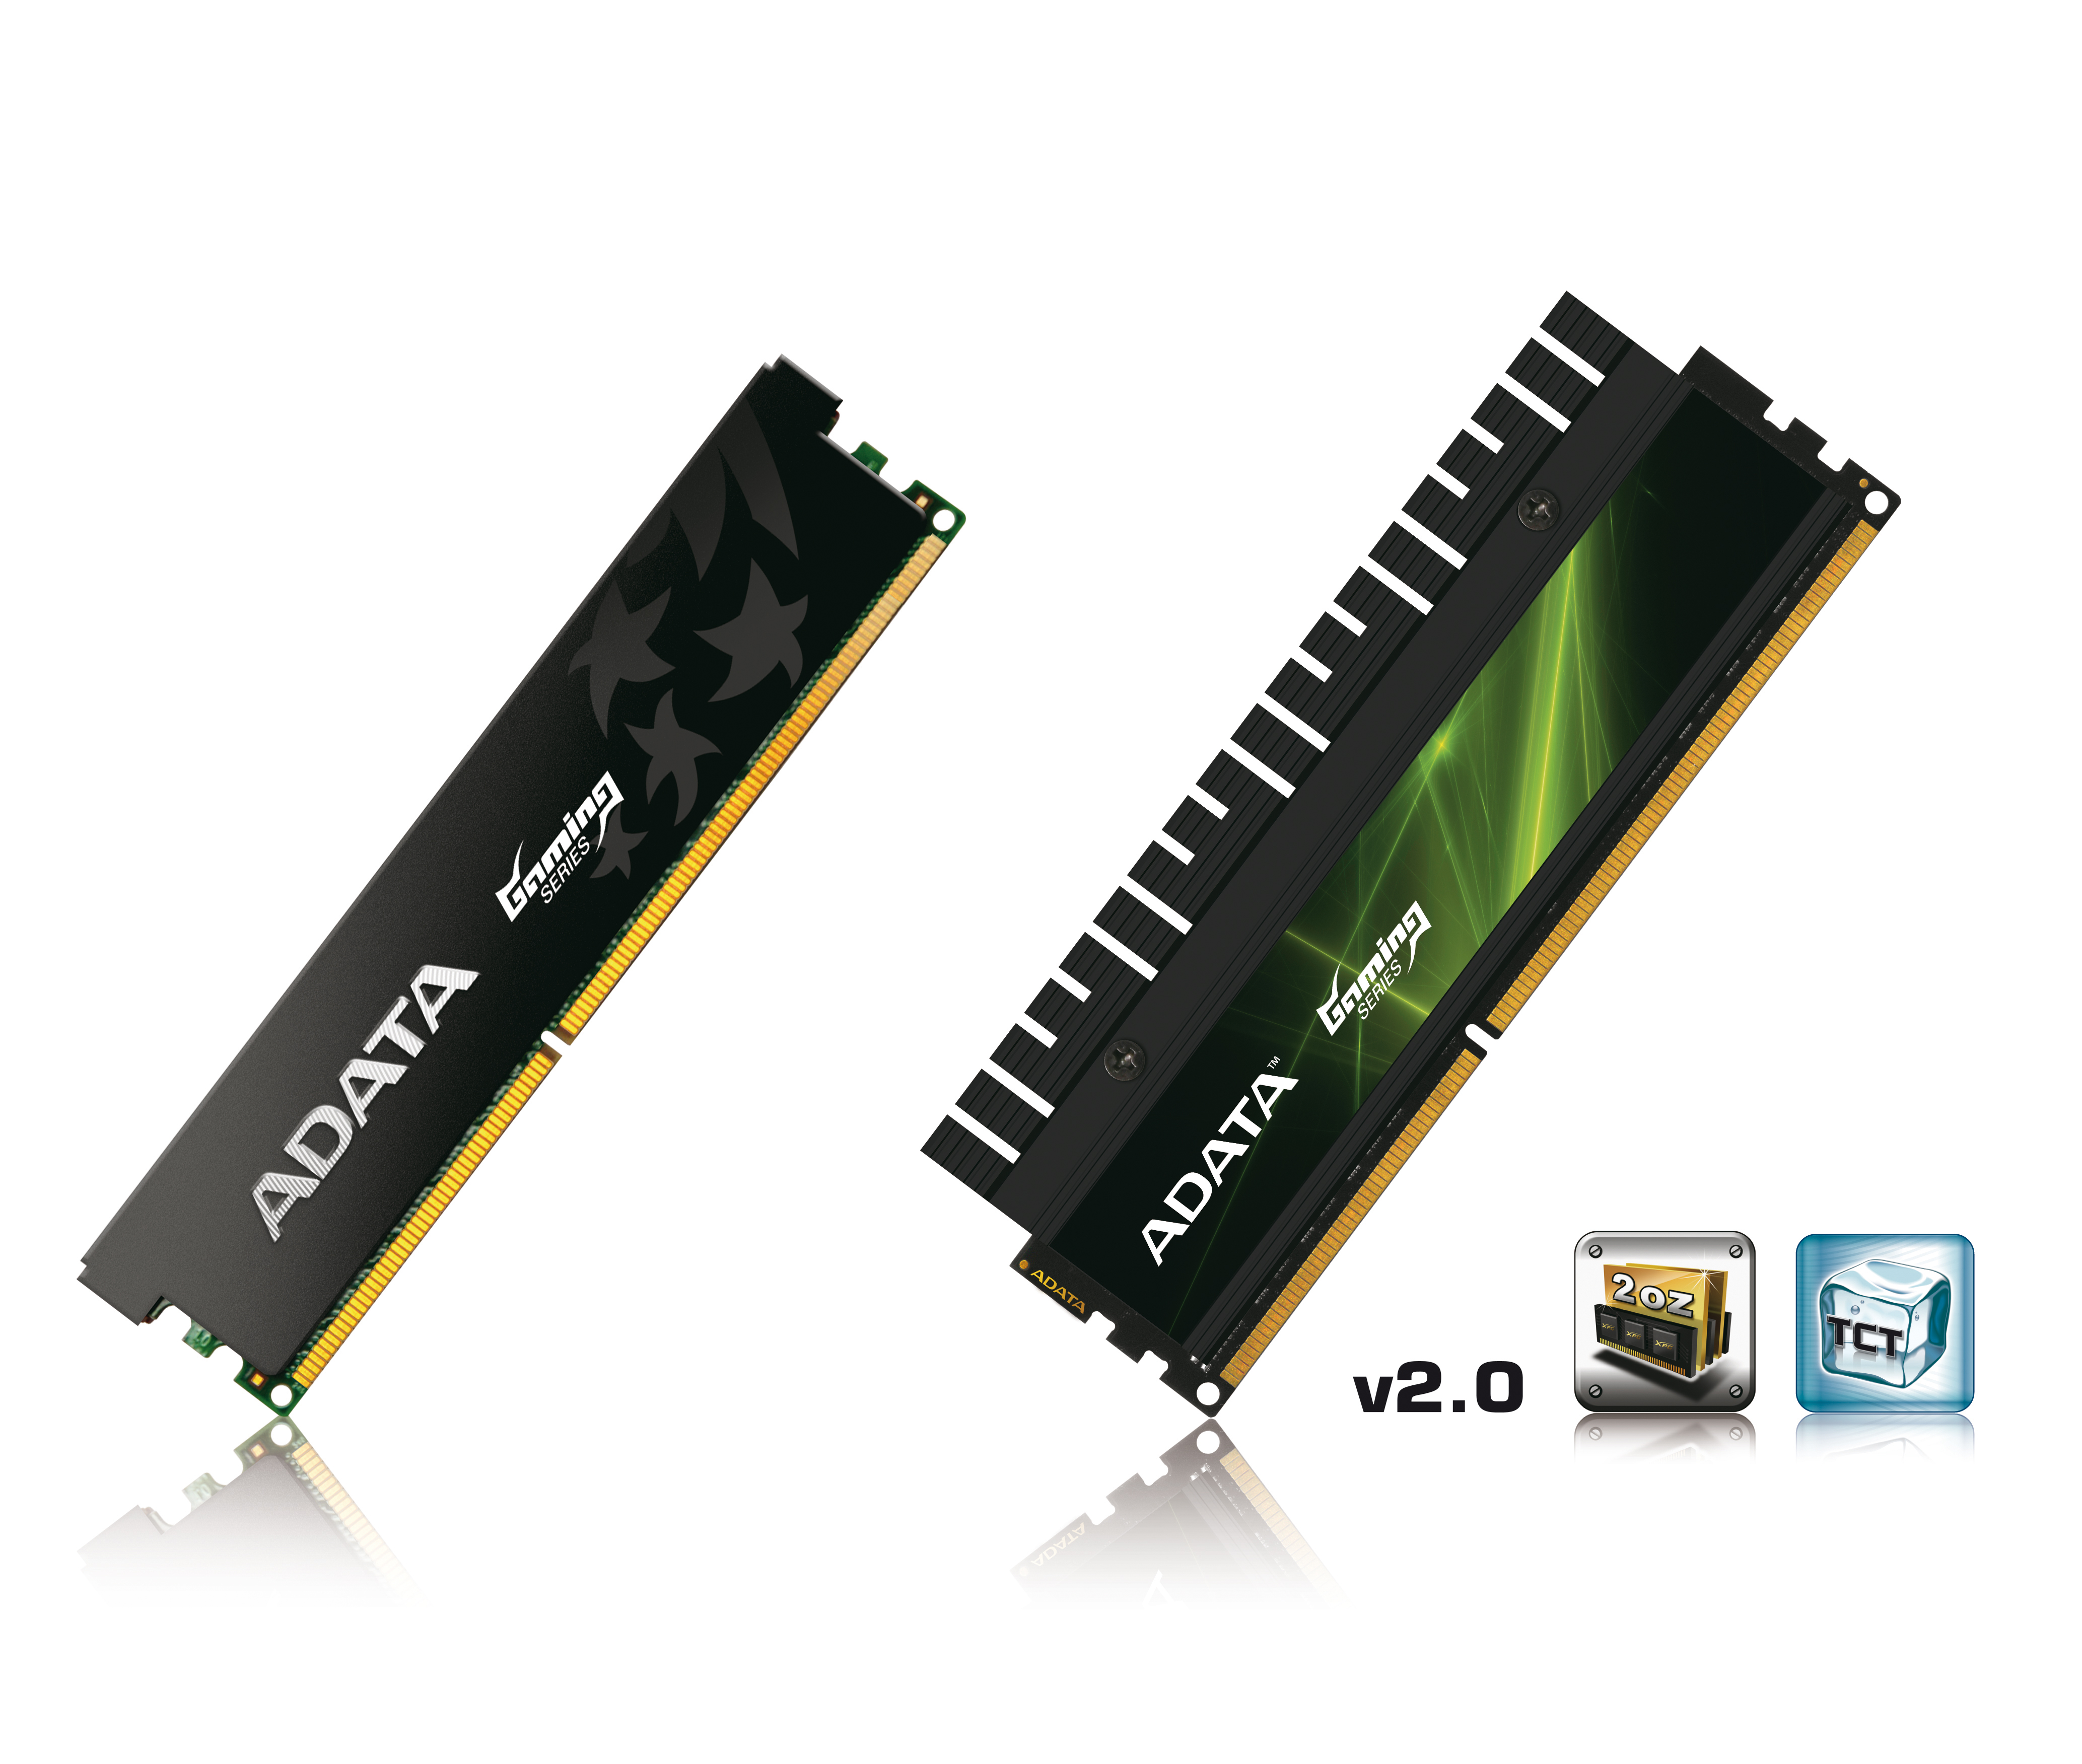 Immagine pubblicata in relazione al seguente contenuto: A-DATA lancia i kit di RAM XPG 2000G DDR3 ad alte prestazioni | Nome immagine: news13221_1.jpg